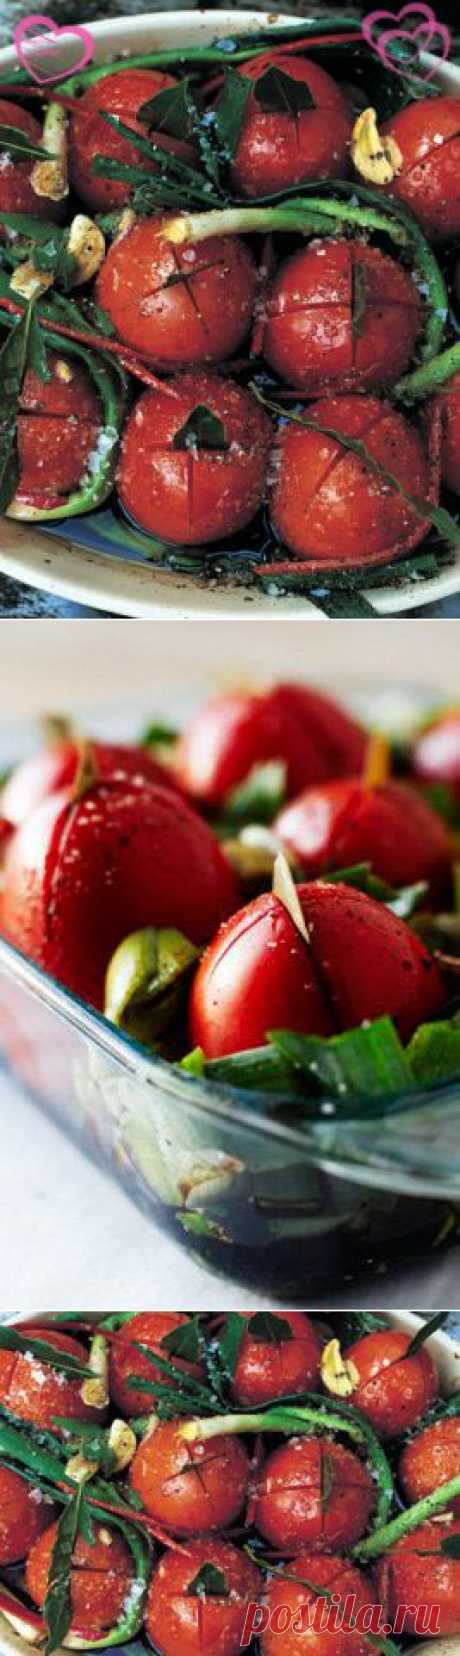 Рецепты ко дню св. Валентина от Джейми! Запеченные помидоры и салат из них | Рецепты Джейми Оливера